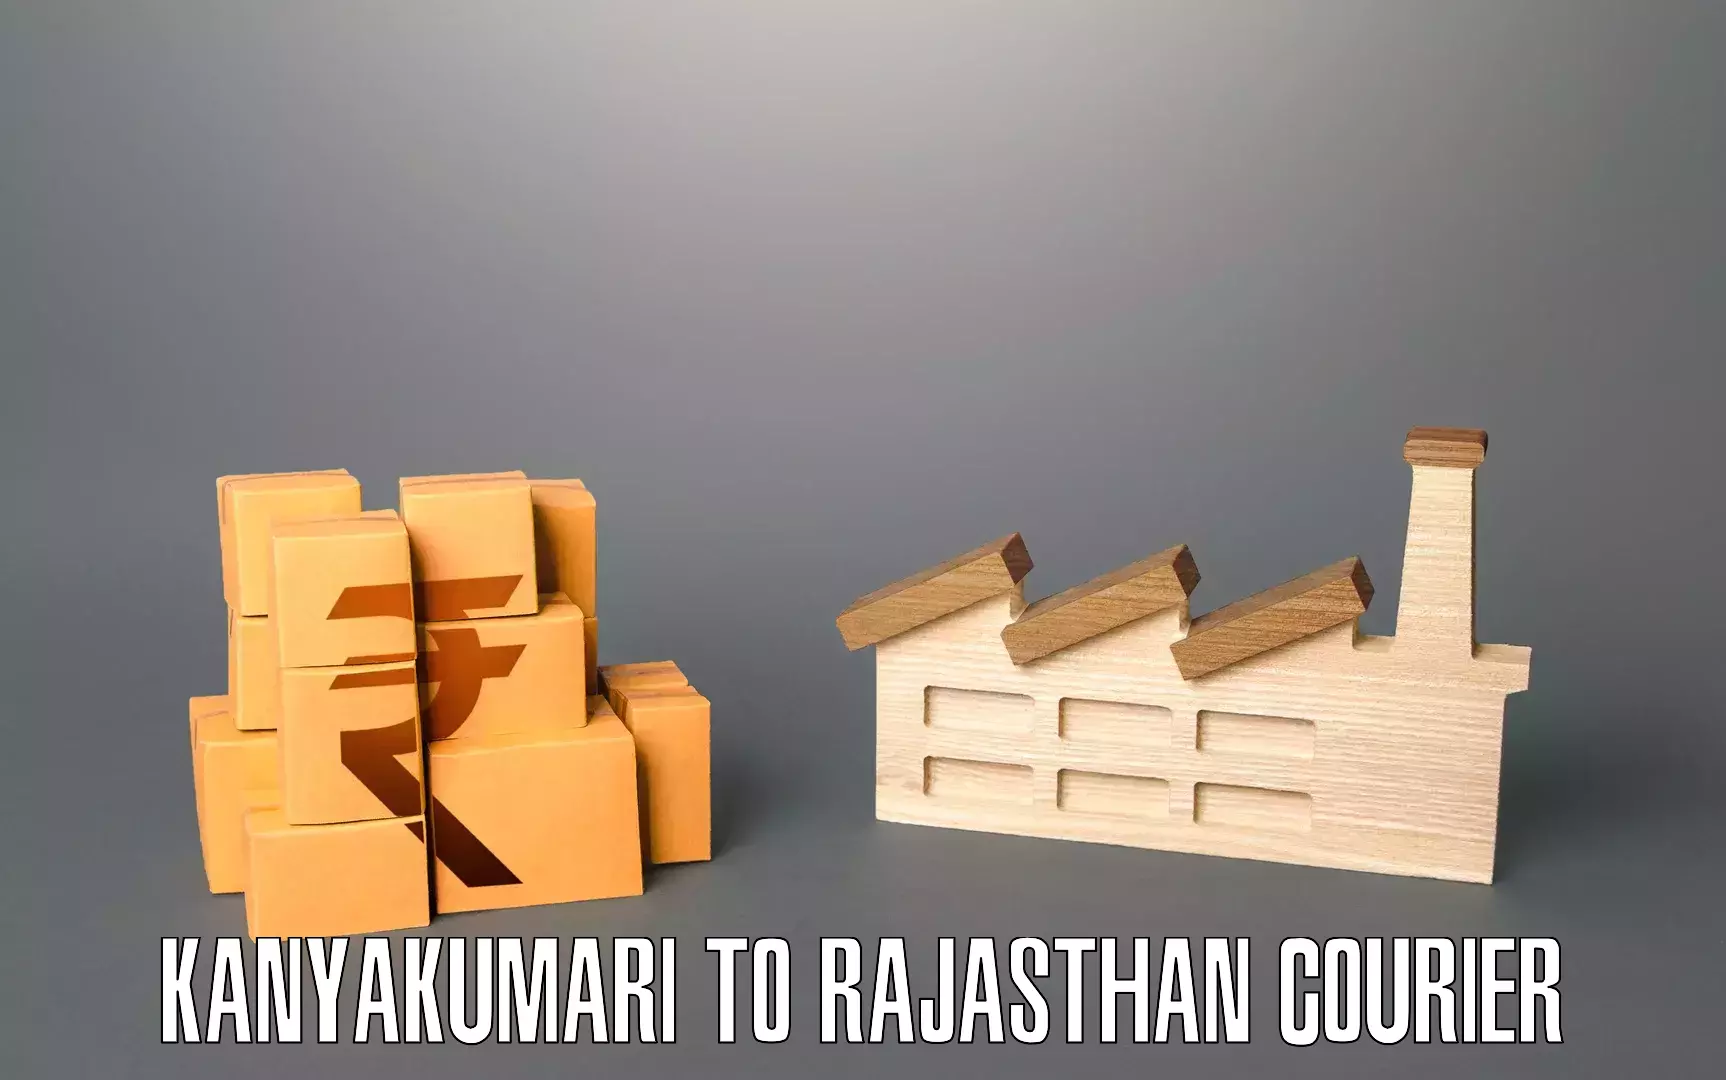 Efficient packing and moving Kanyakumari to Neemrana